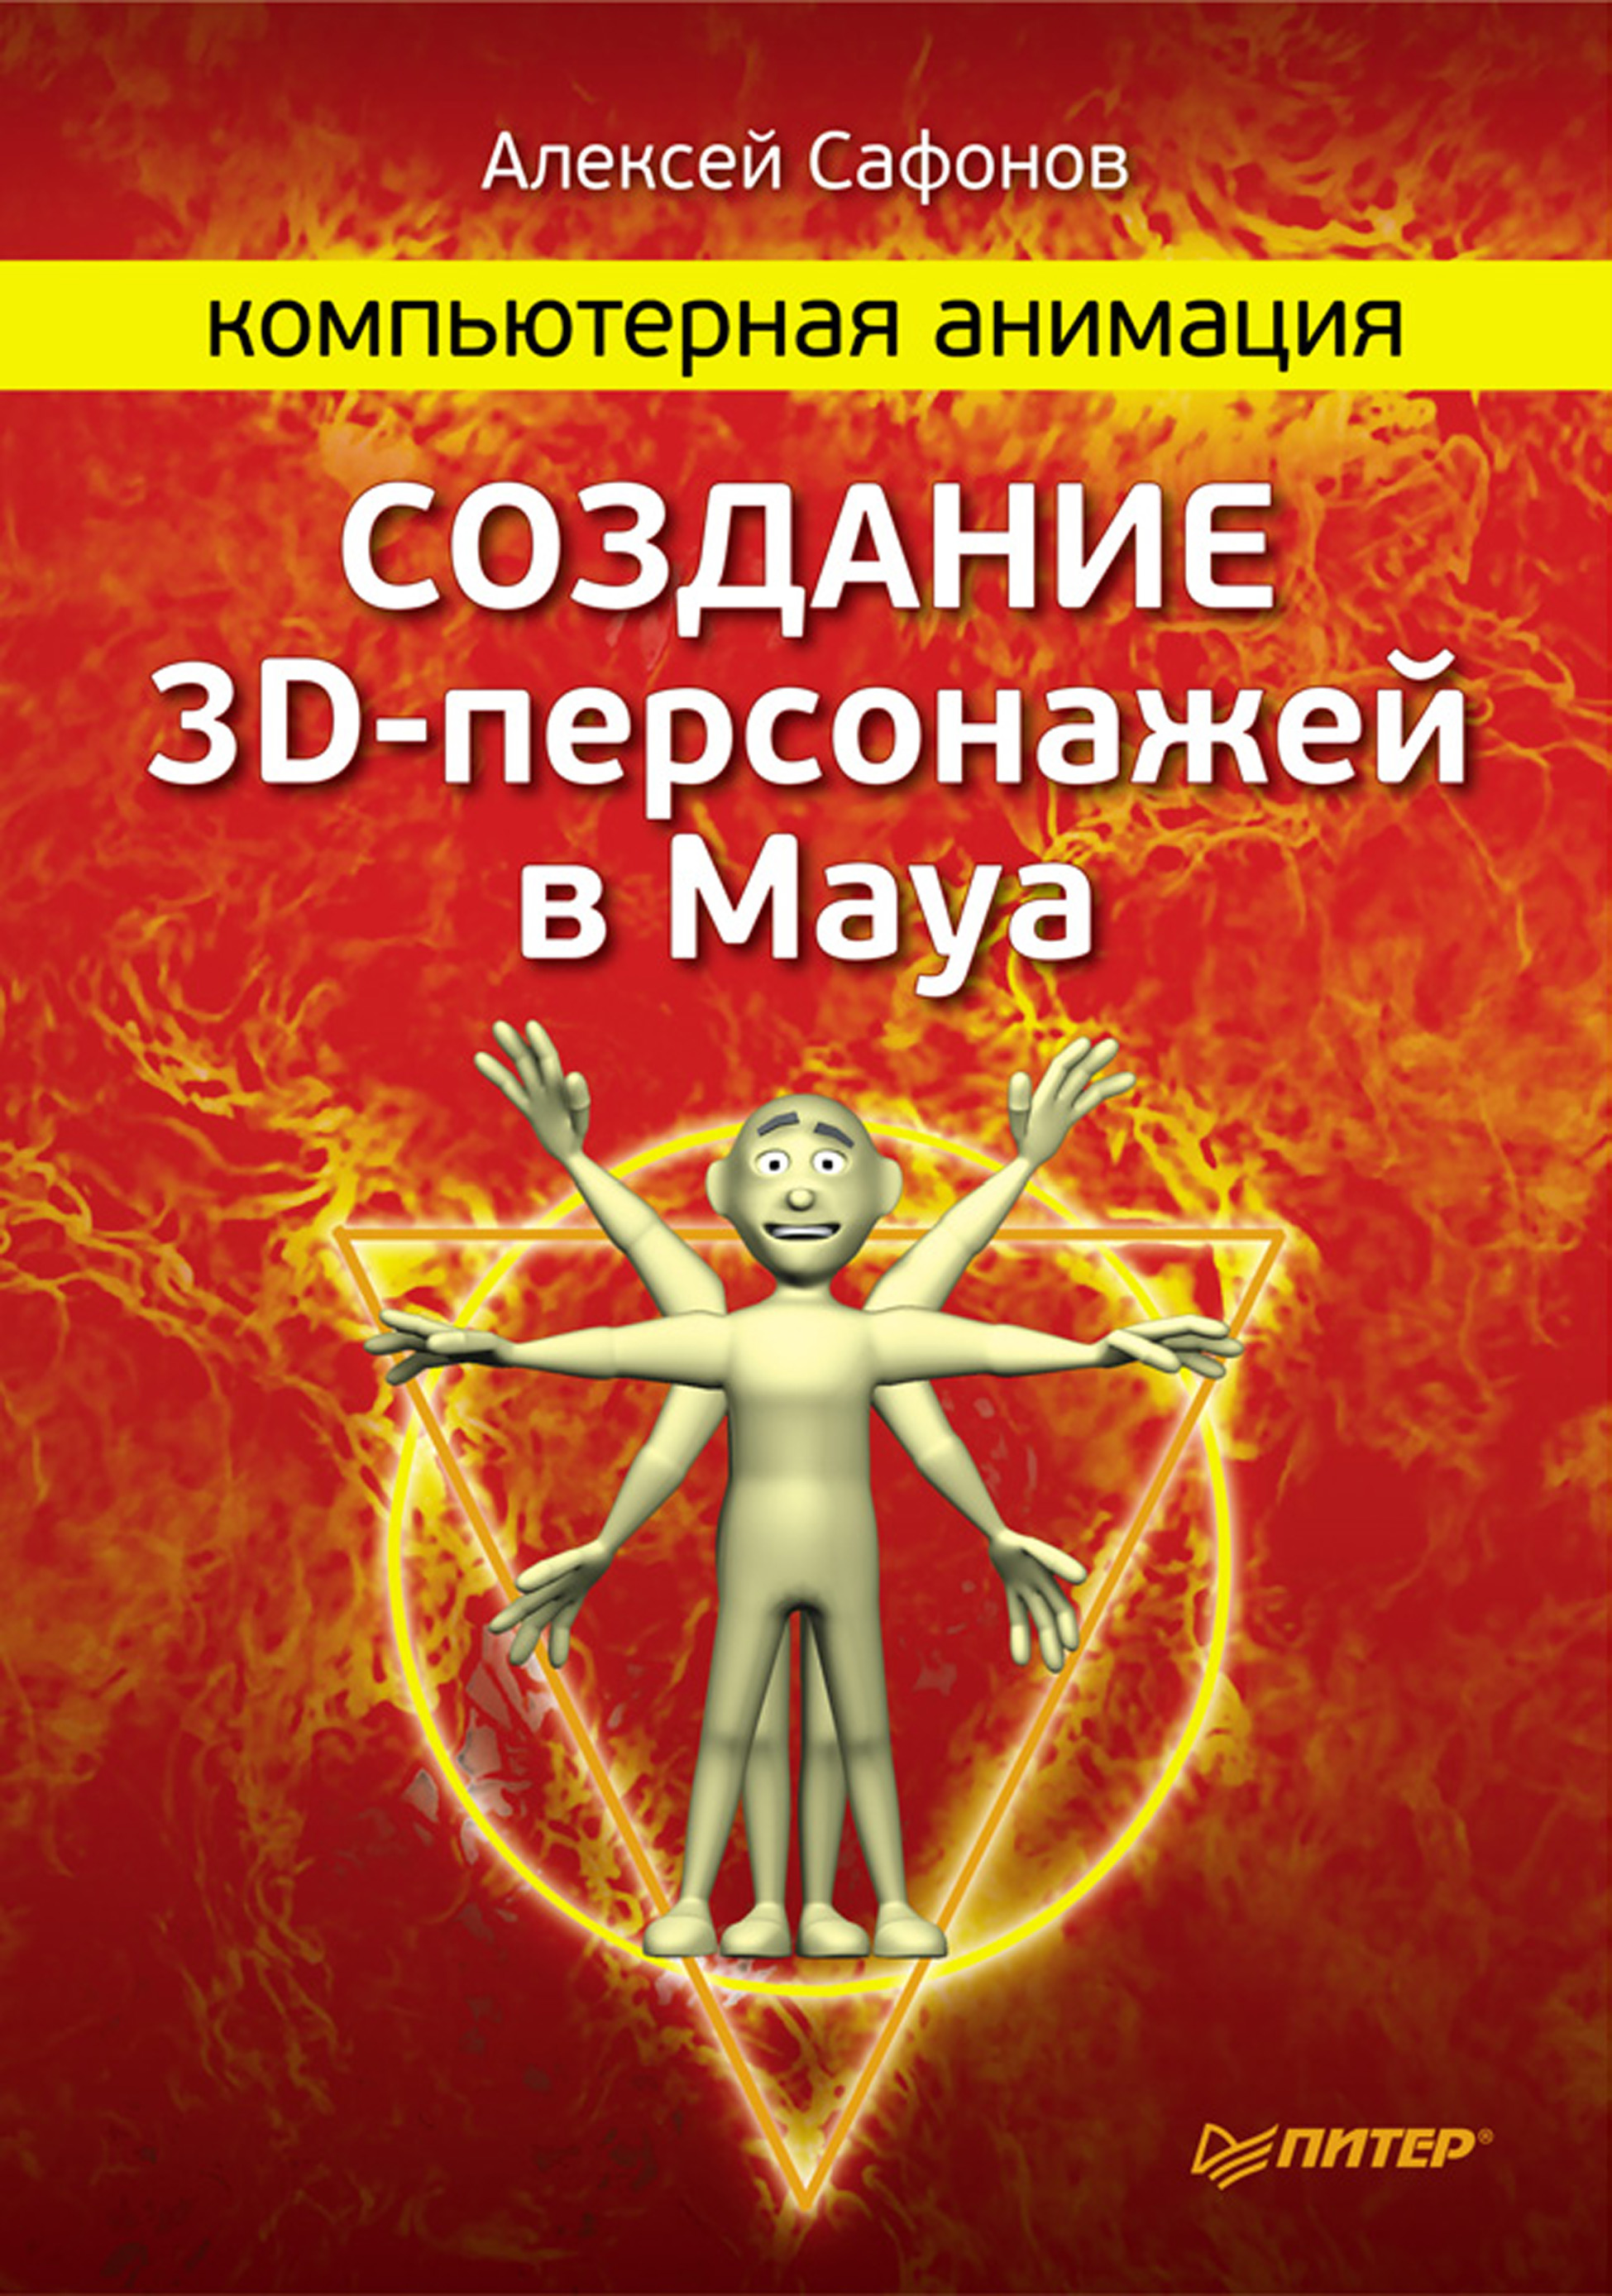 Книга  Компьютерная анимация. Создание 3D-персонажей в Maya созданная Алексей Сафонов может относится к жанру книги о компьютерах, программы, руководства. Стоимость электронной книги Компьютерная анимация. Создание 3D-персонажей в Maya с идентификатором 6377853 составляет 219.00 руб.